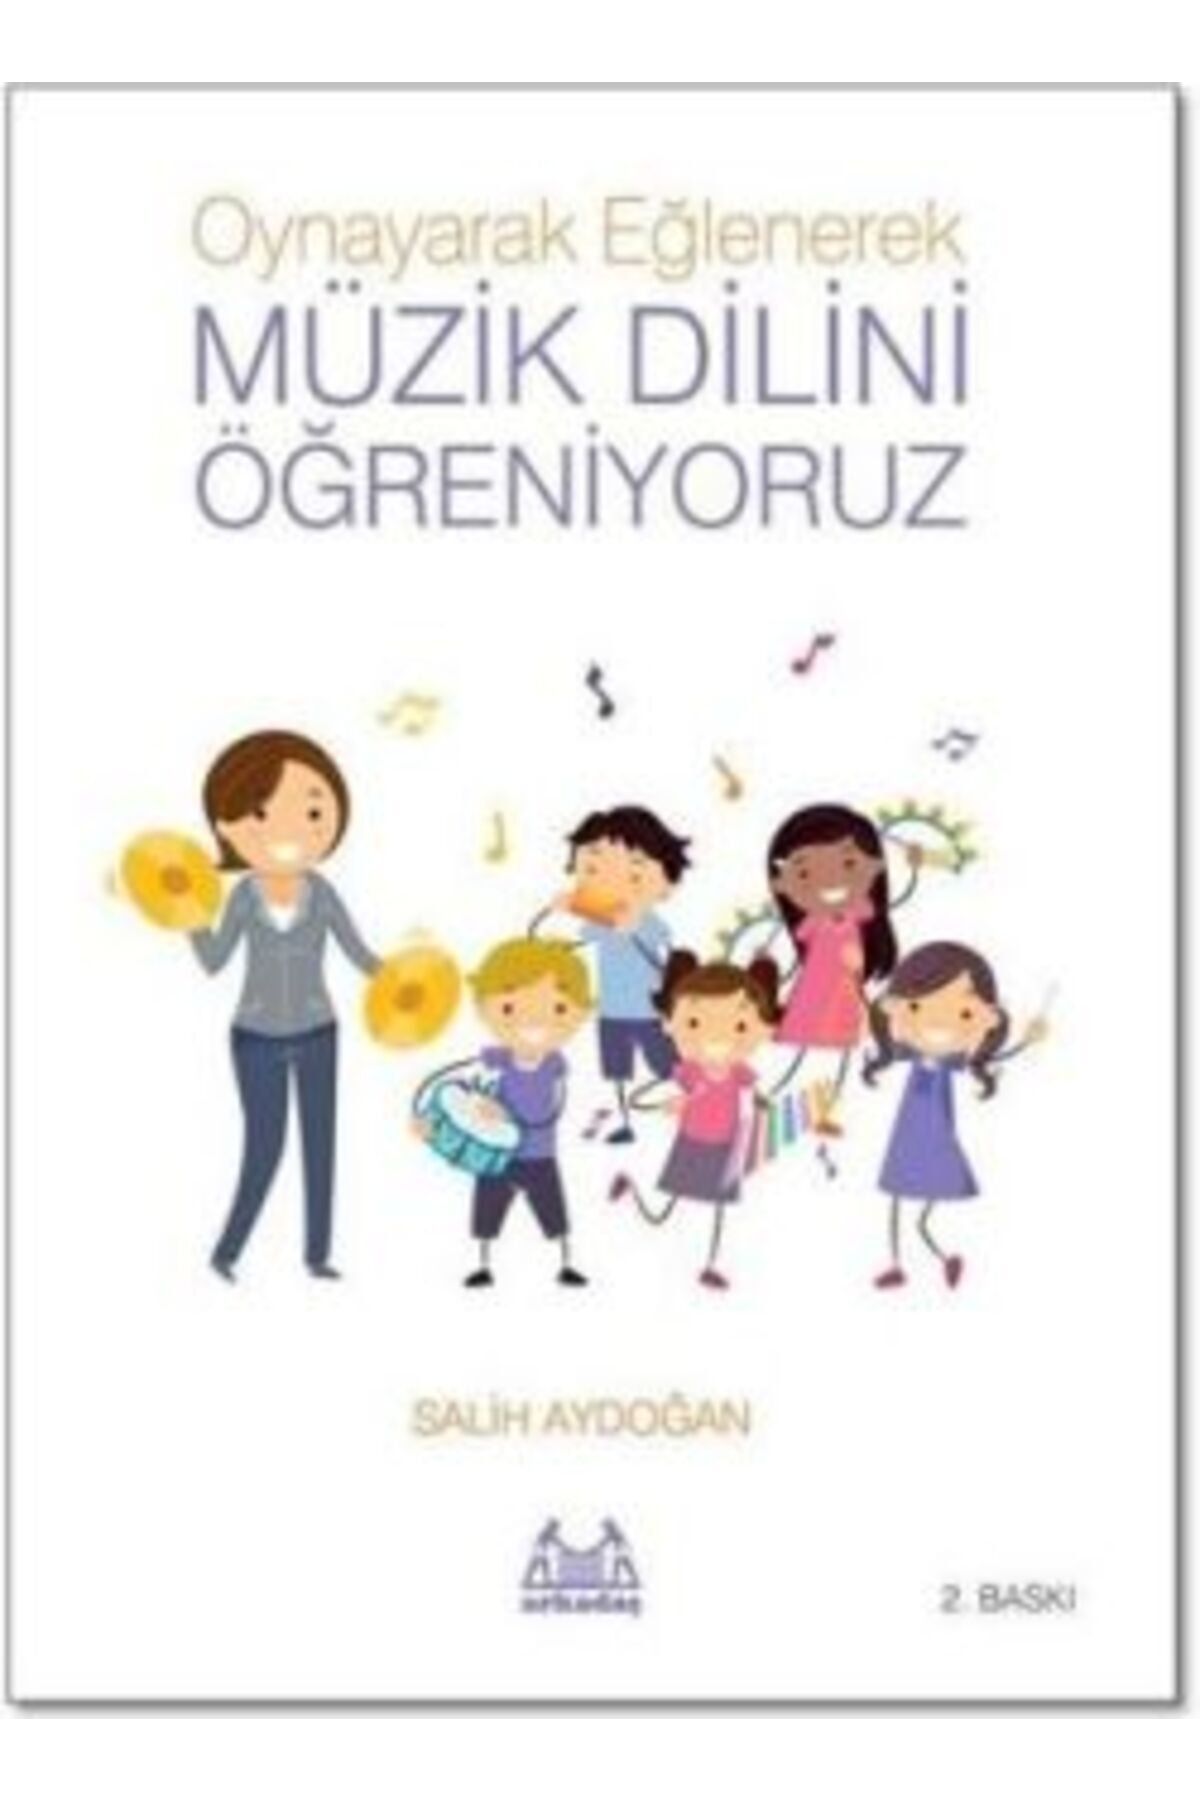 Arkadaş Yayıncılık Oynayarak Eğlenerek Müzik Dilini Öğreniyoruz Salih Aydoğan